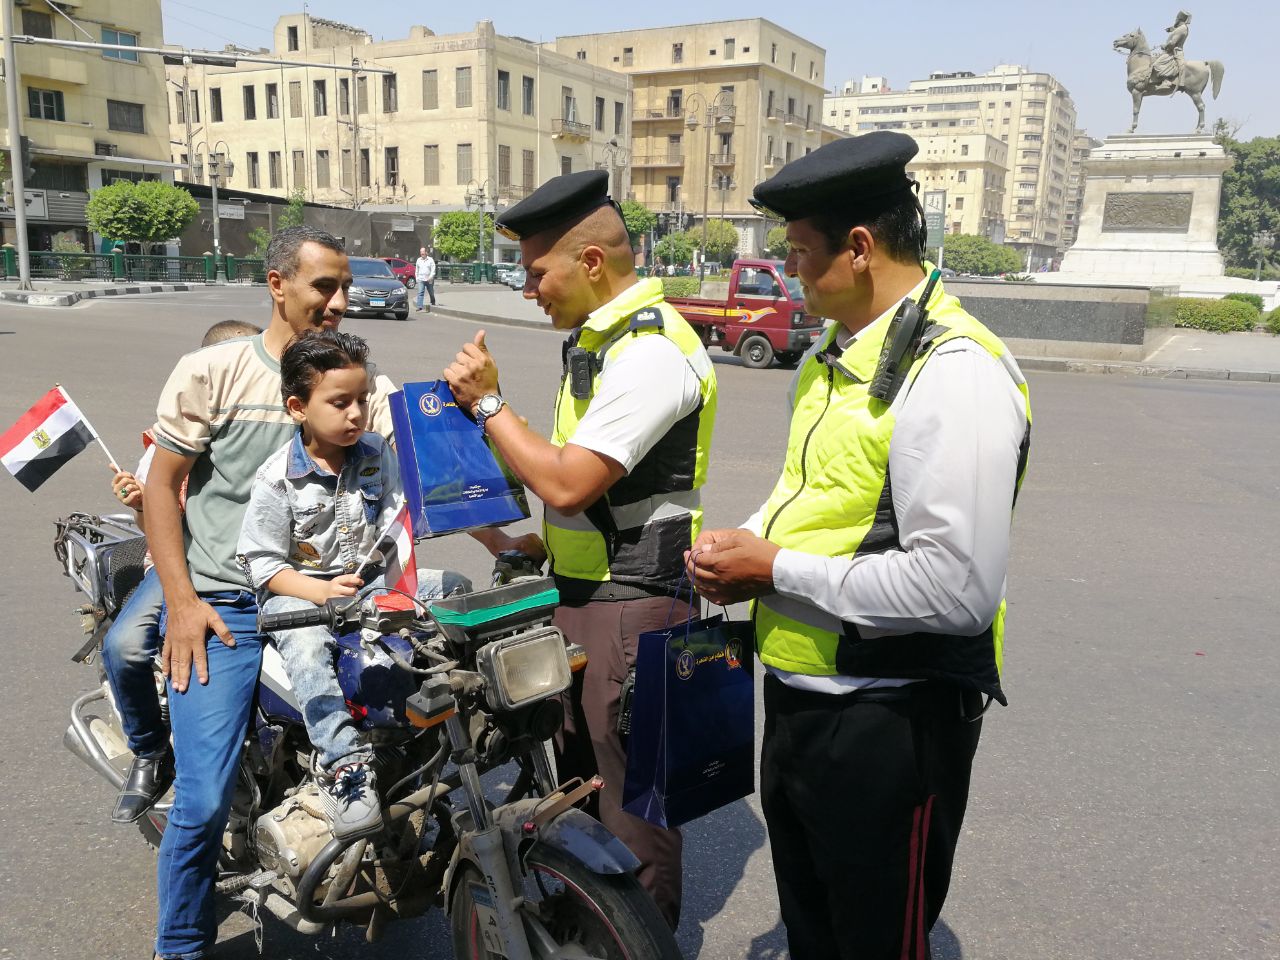 رجال الشرطة يوزعون الادوات المدرسية والارشادات المرورية على الطلبة (12)